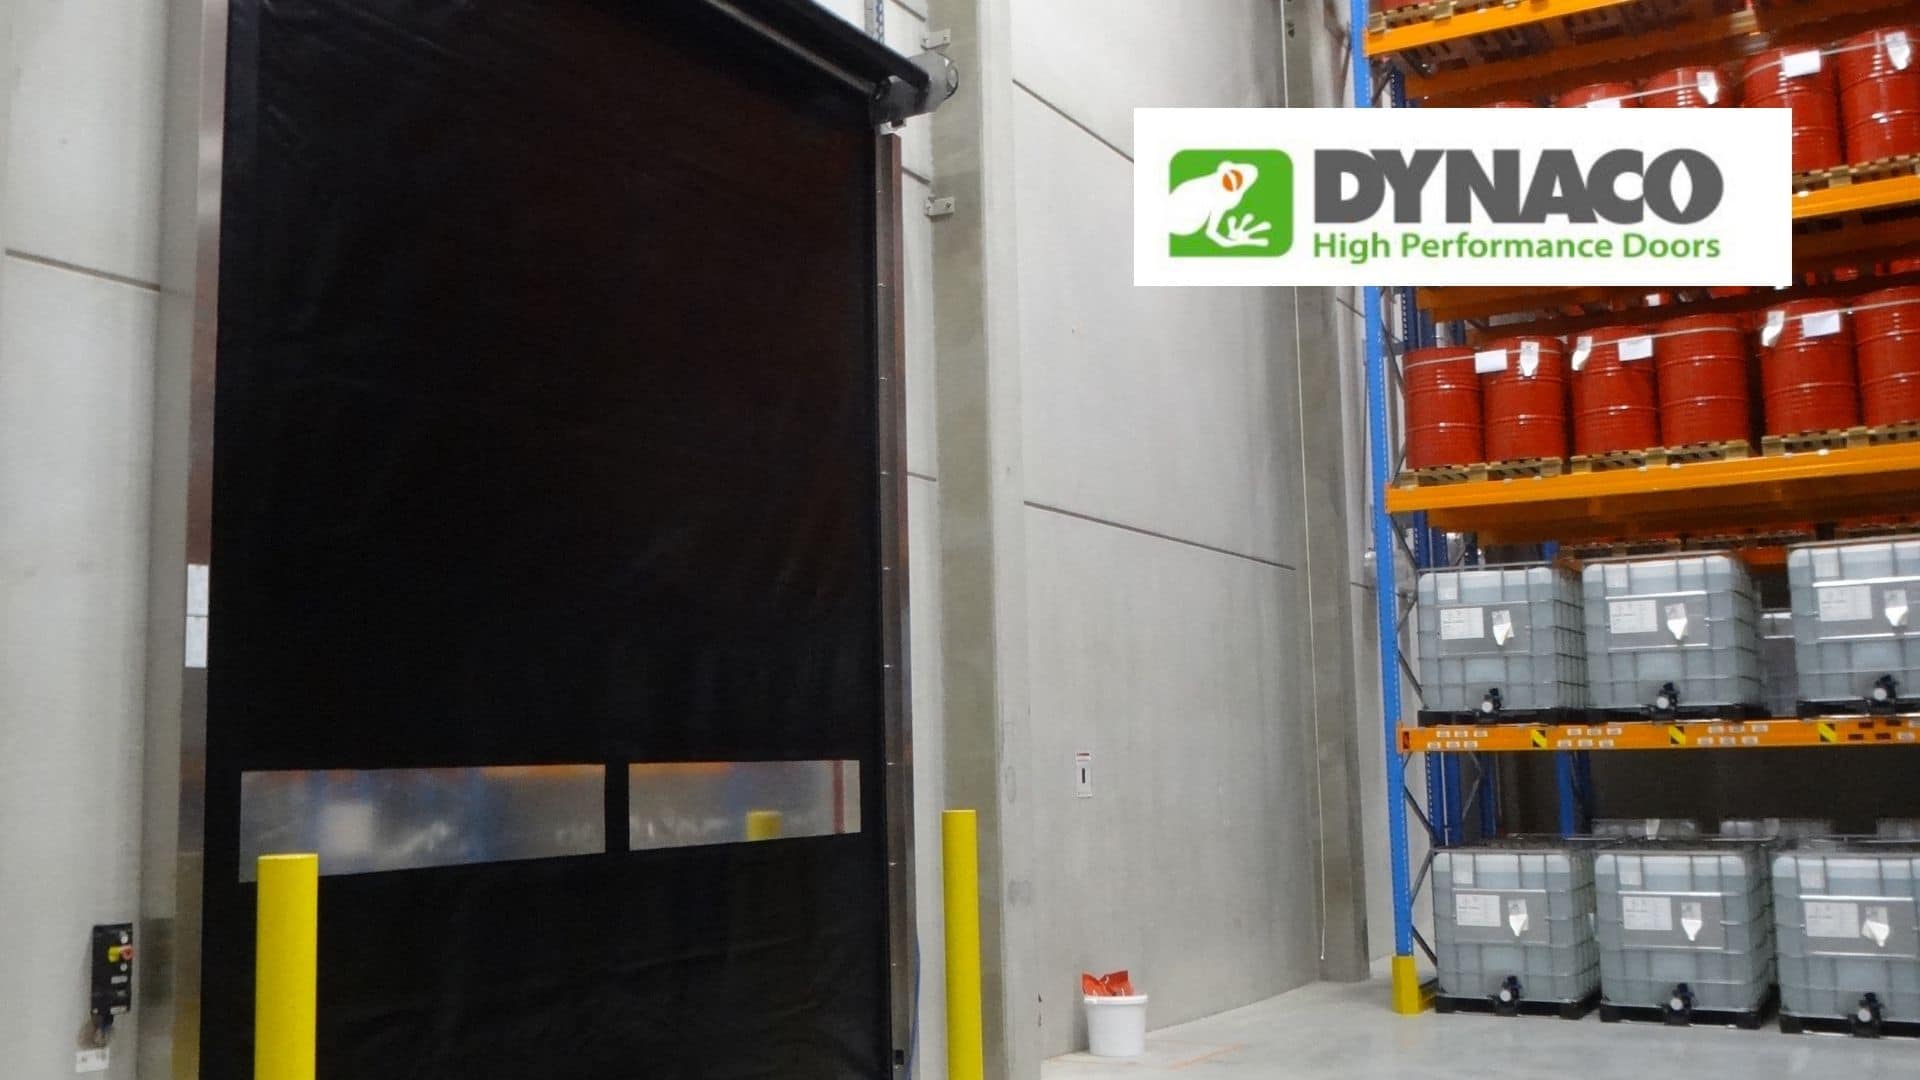 Quand les portes industrielles deviennent des solutions , Dynaco S 5 Atex, la solution certifiée pour réduire les risques d’explosion